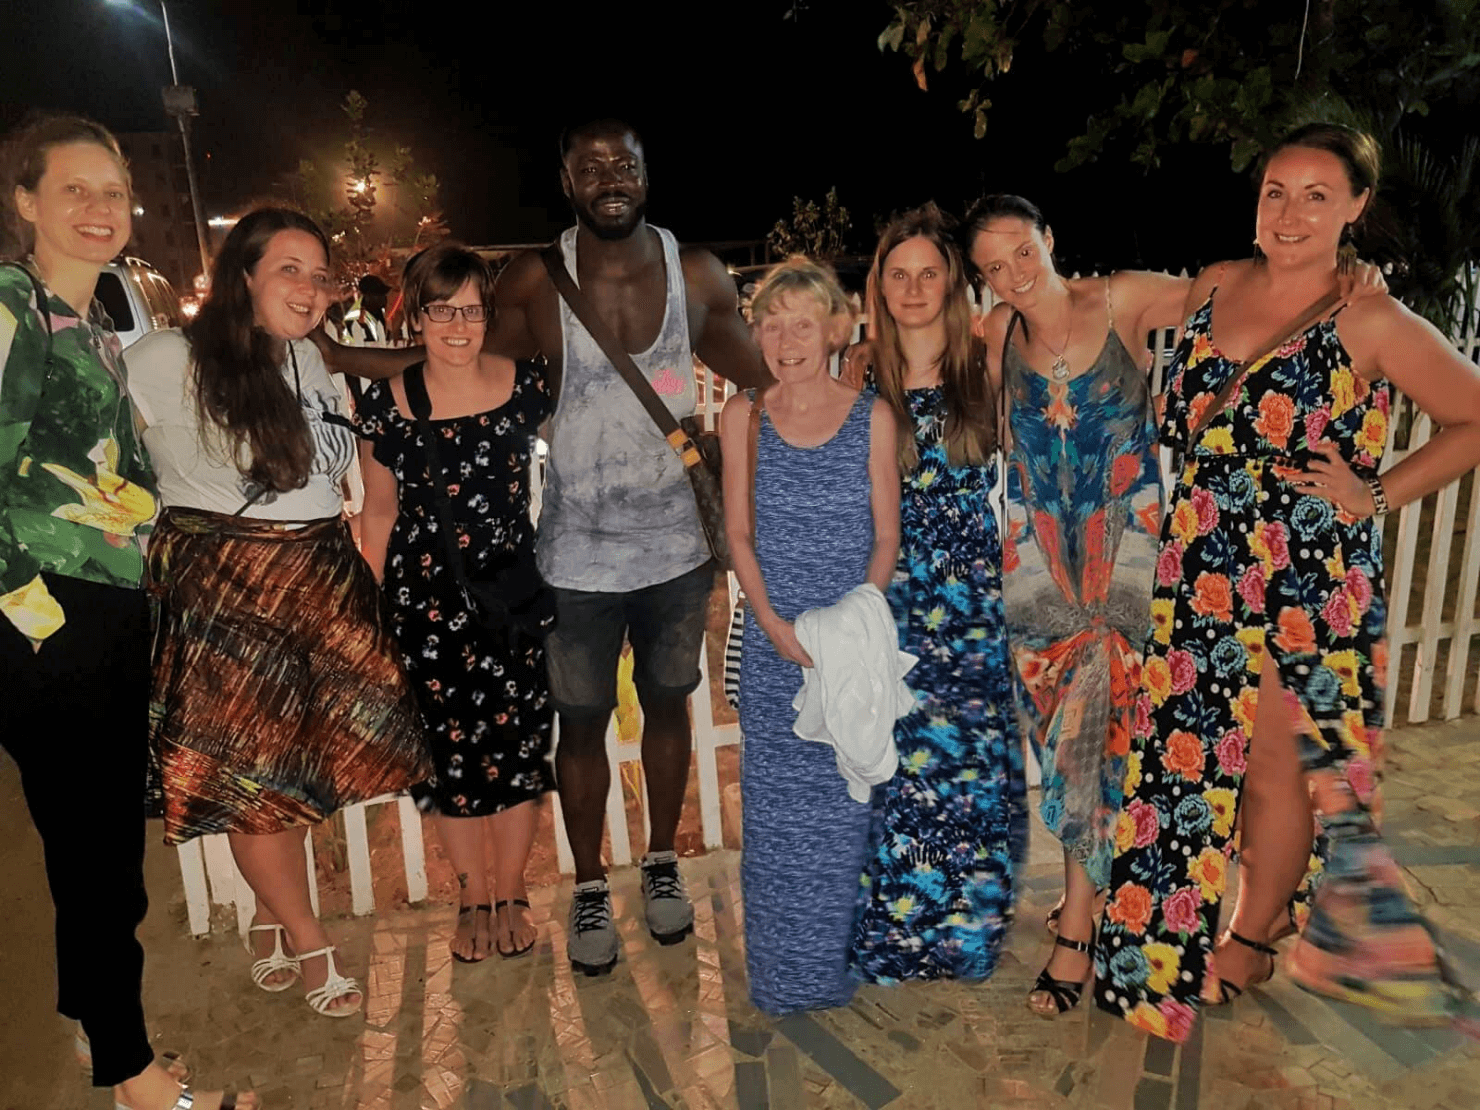 Things to Know Before You Visit Sierra Leone - Helen in Wonderlust